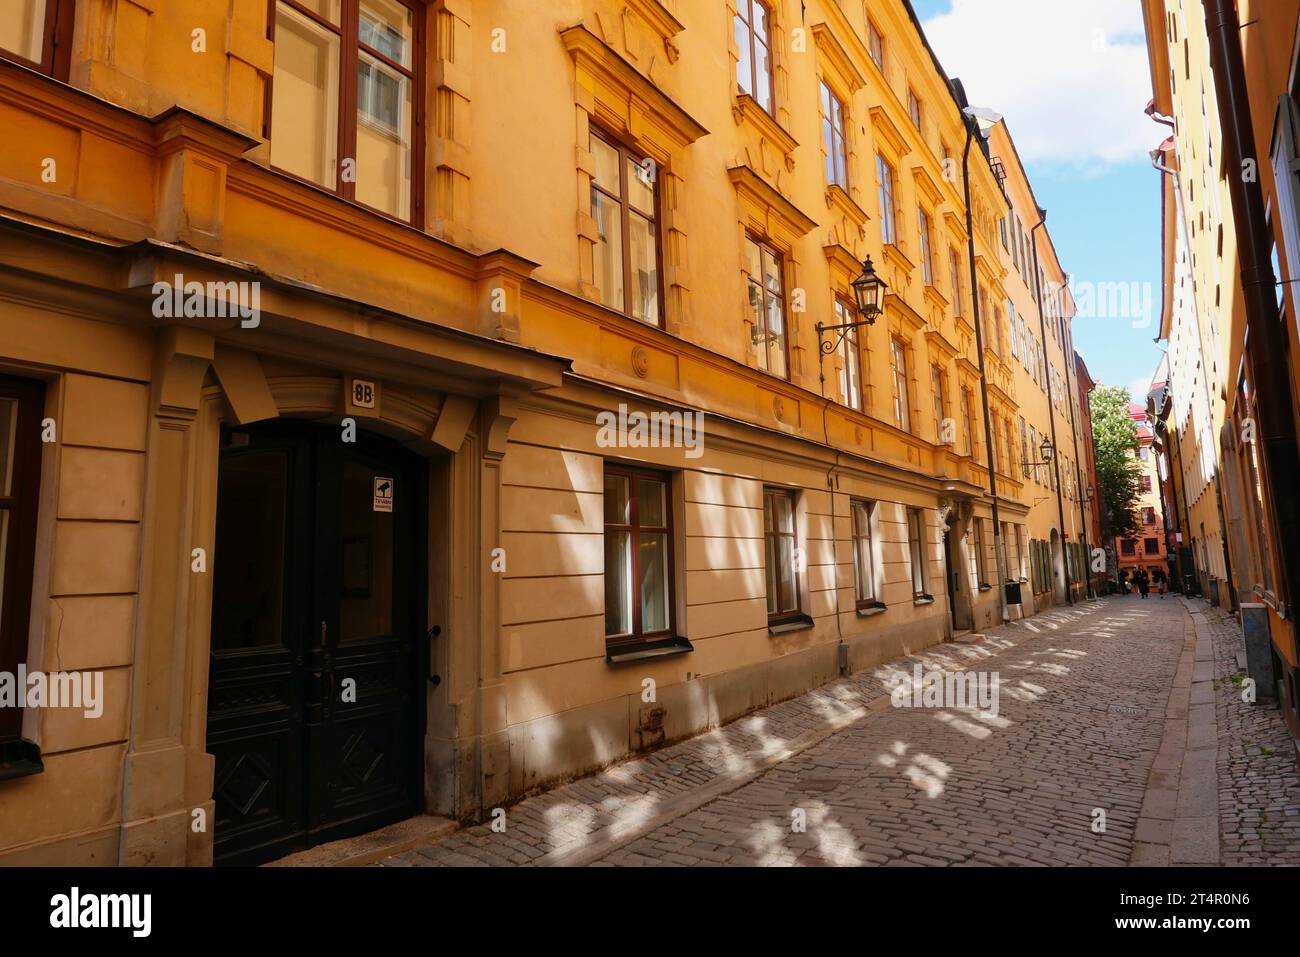 Svezia, Stoccolma, la città vecchia, stradine strette e case. Foto Stock